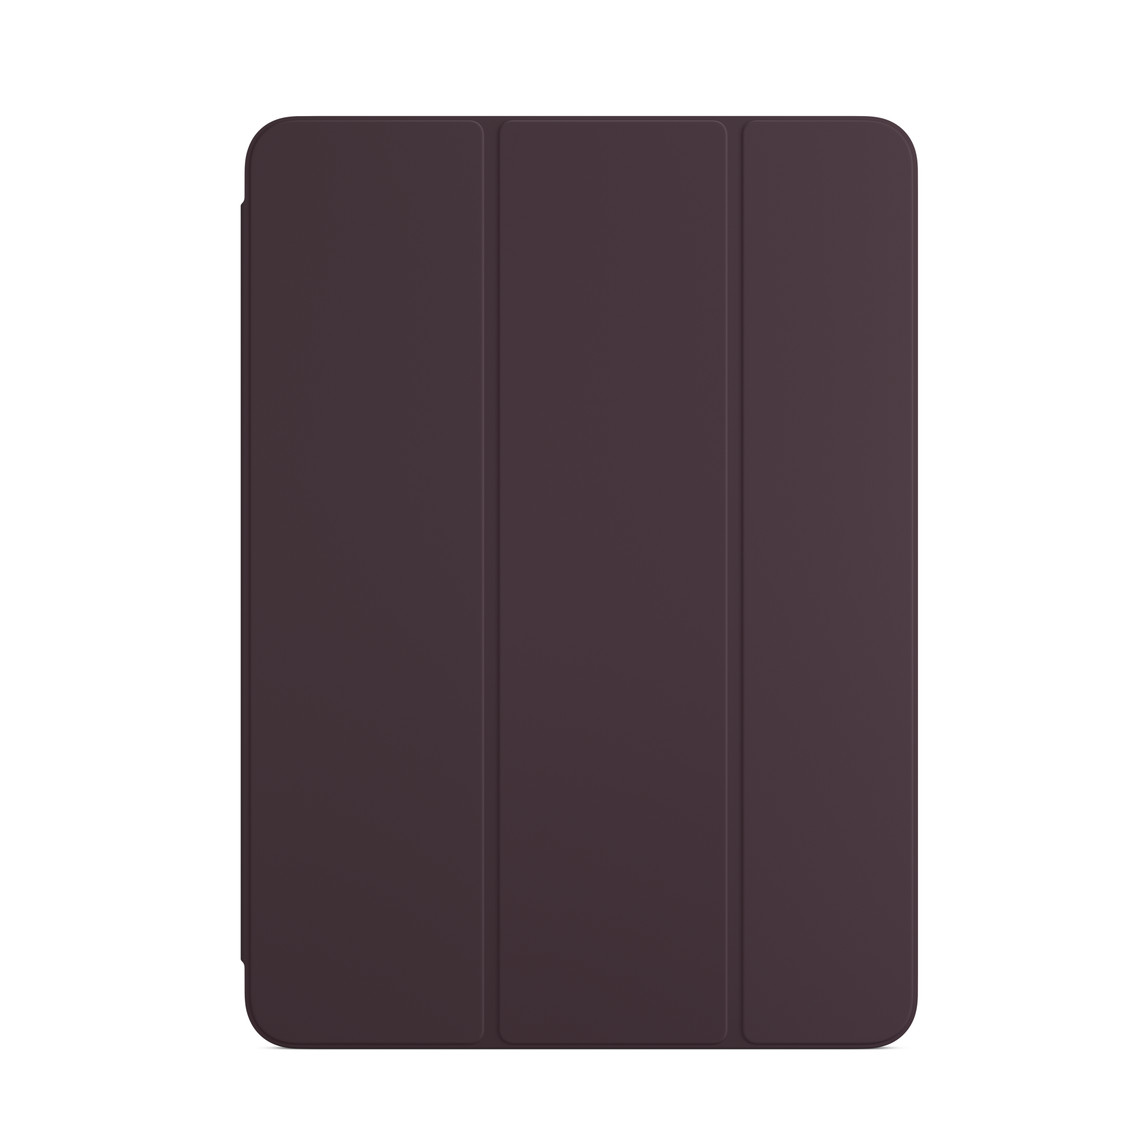 Smart Folio voor iPad Air in donkere kers.